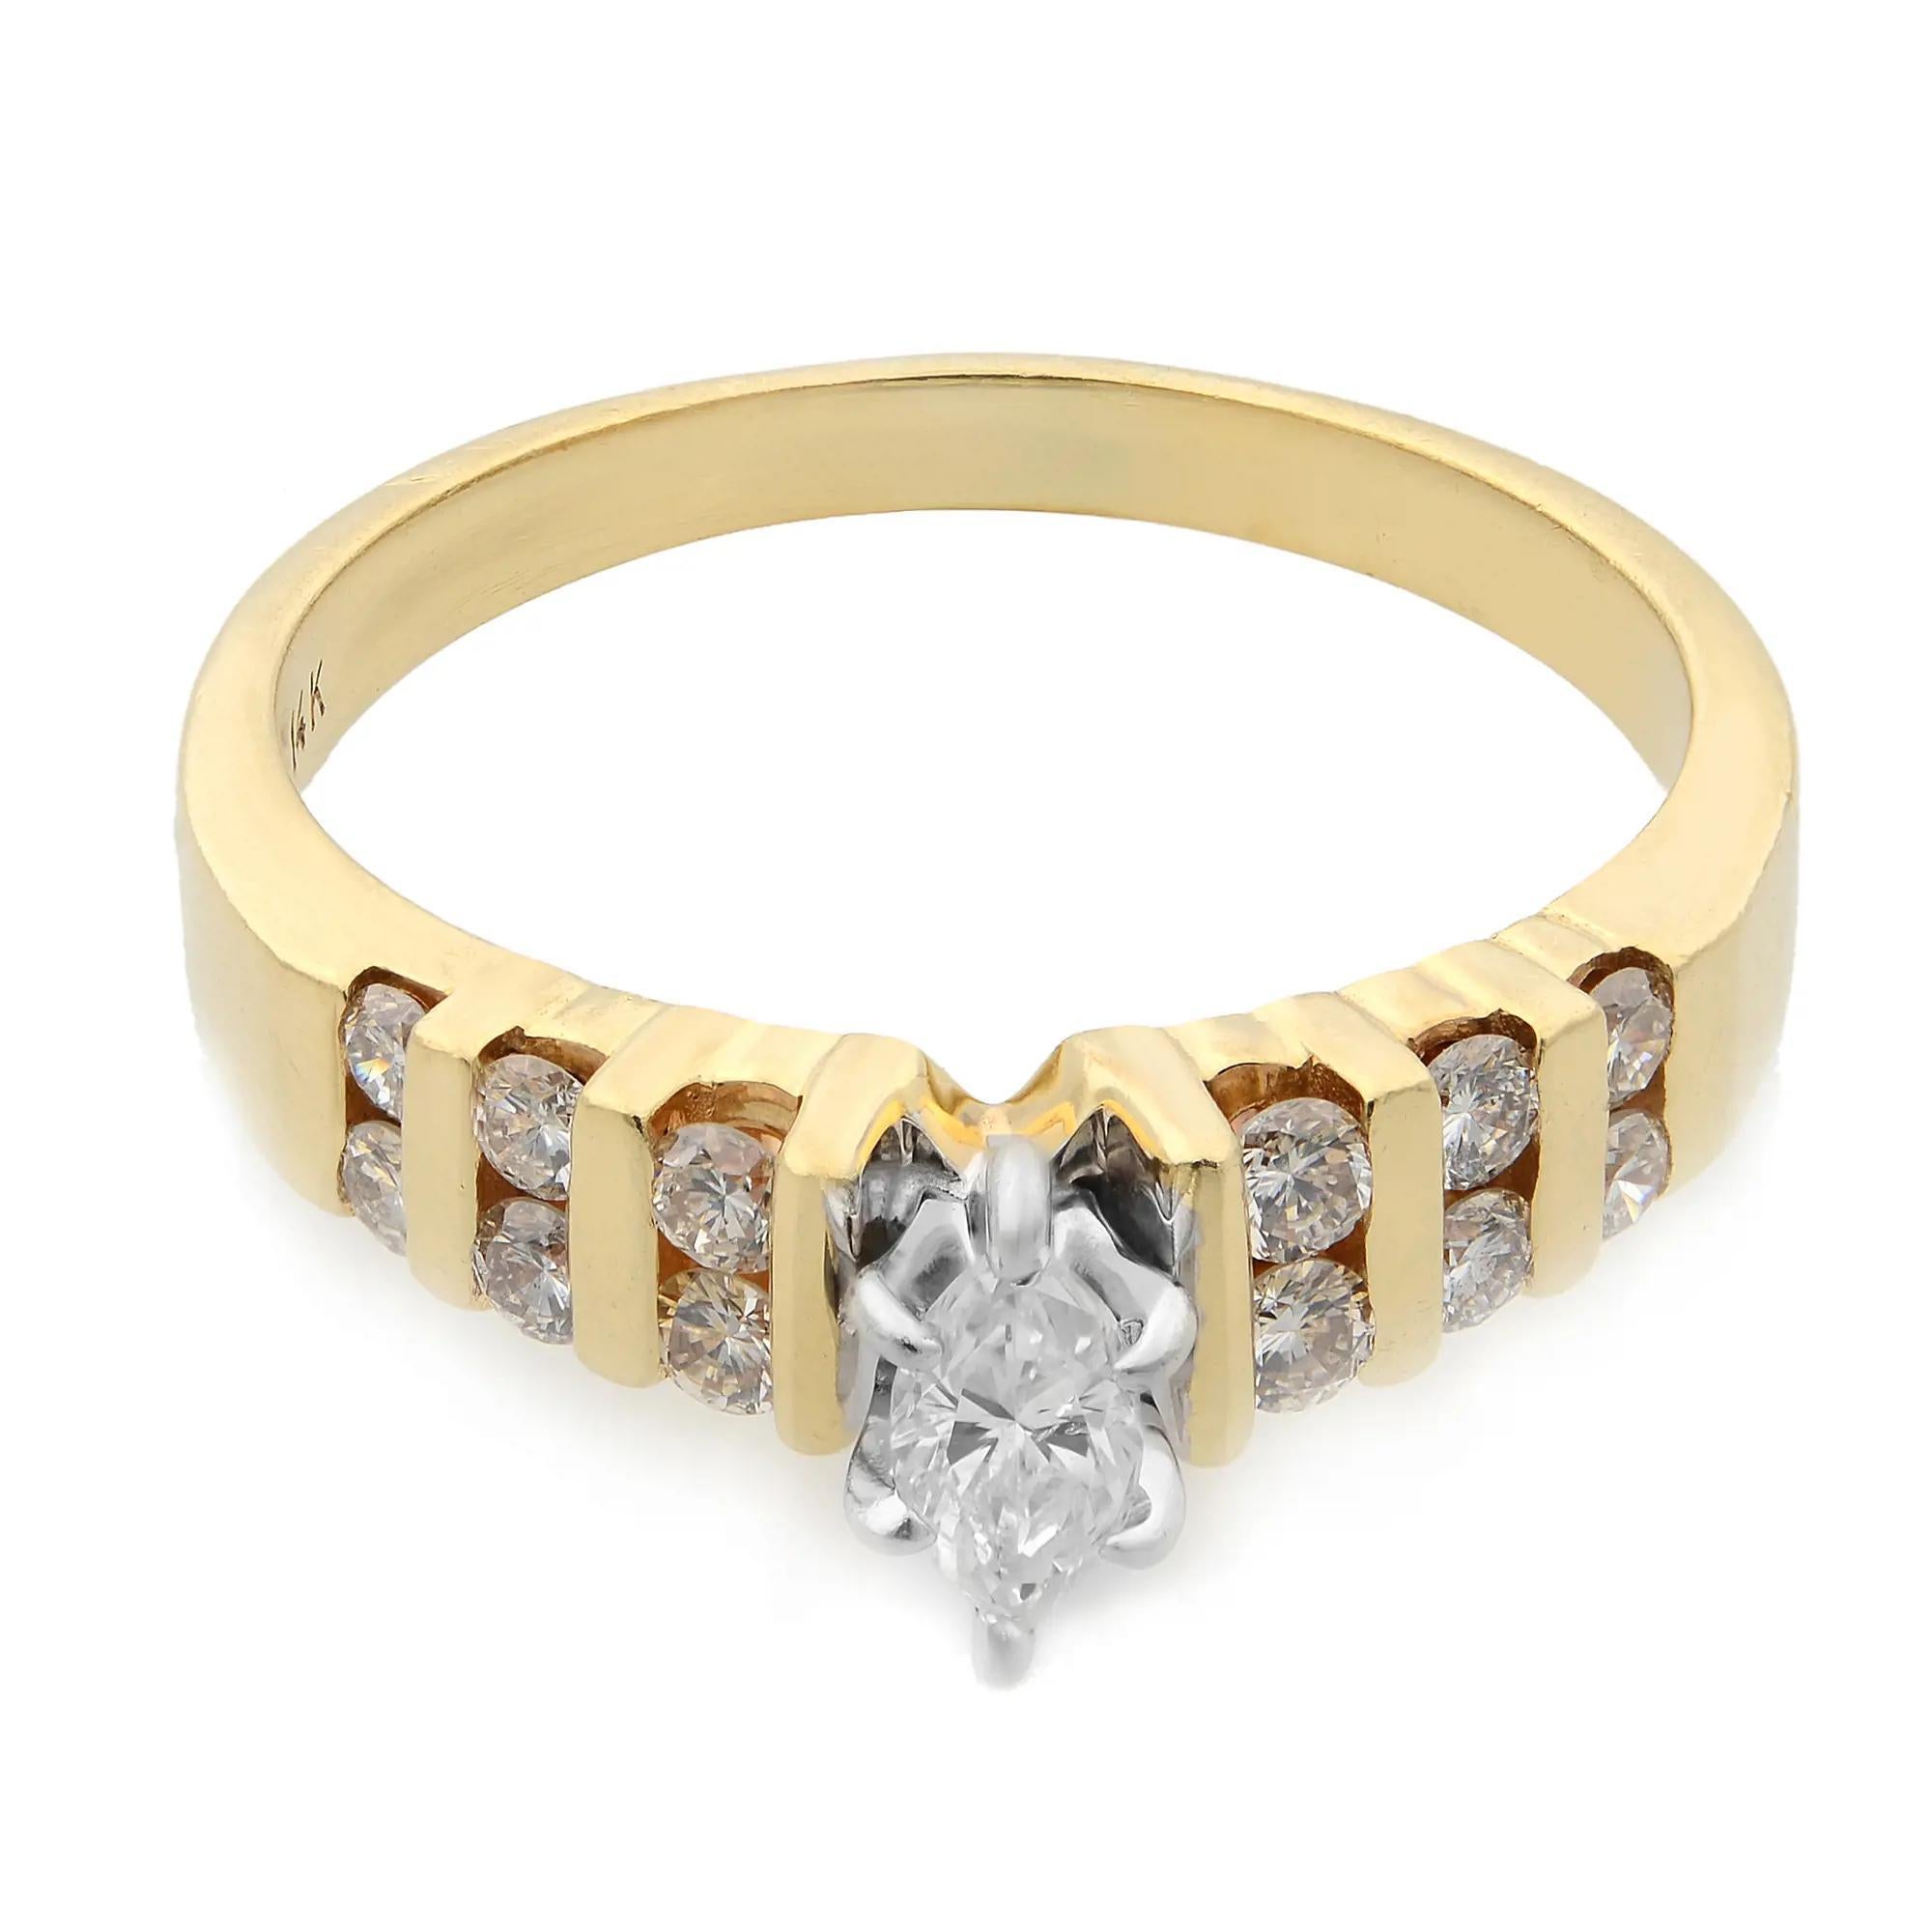 Cette magnifique et séduisante bague de fiançailles présente un diamant central de forme marquise serti sur un anneau, flanqué de diamants ronds sertis en canal sur les épaules de l'anneau pour ajouter à la beauté de l'ensemble. Fabriqué en or jaune